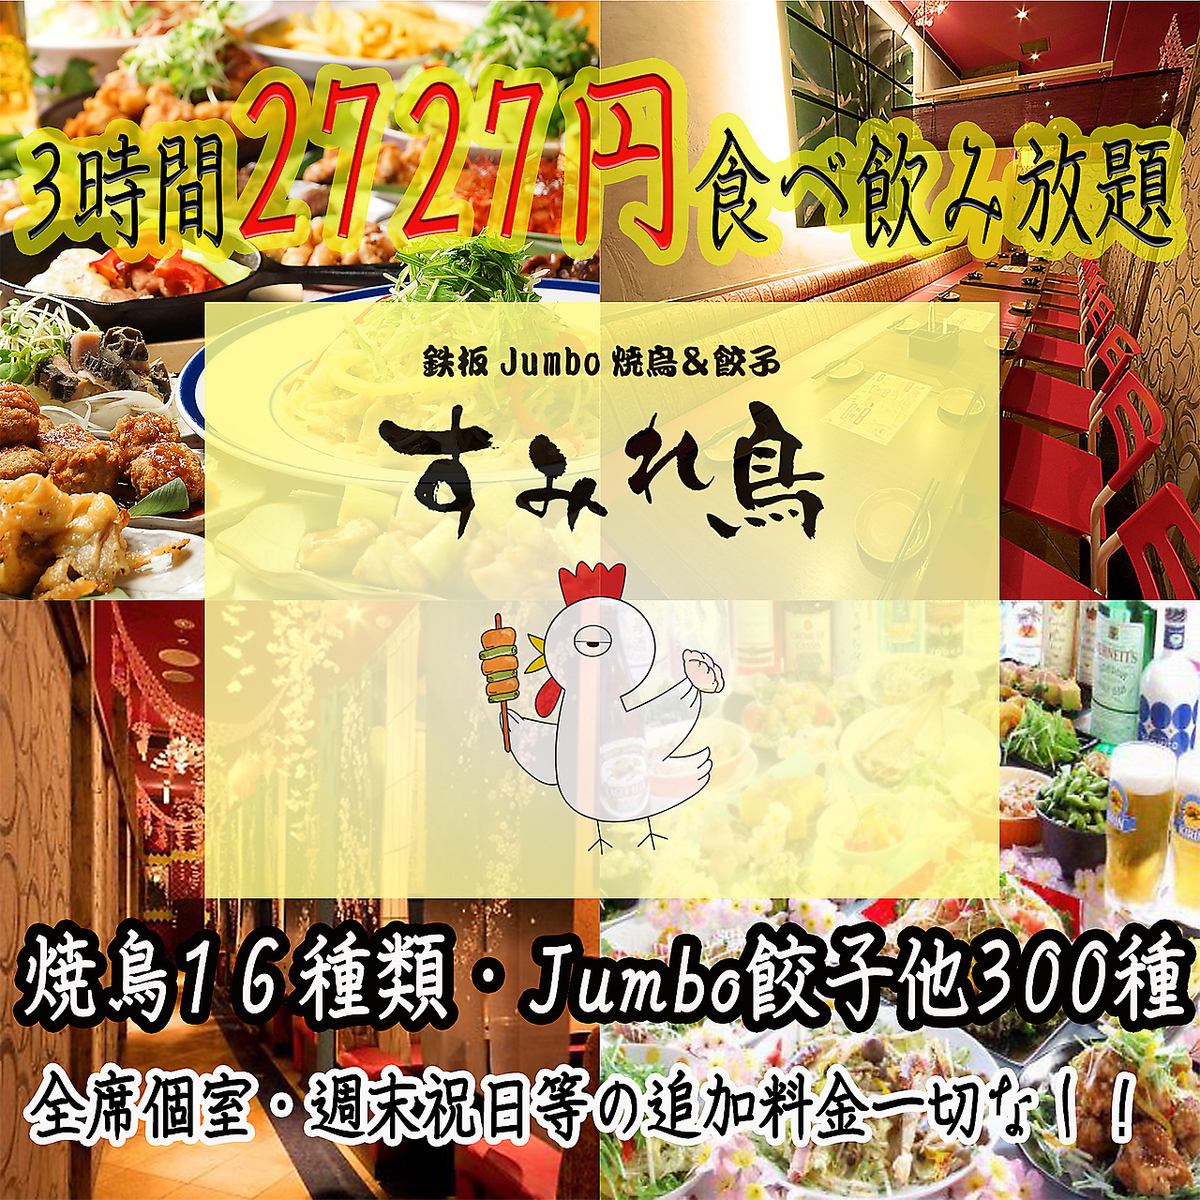 3小時無限暢吃☆烤雞肉串和雞肉火鍋無限暢吃2,999日圓（含稅）